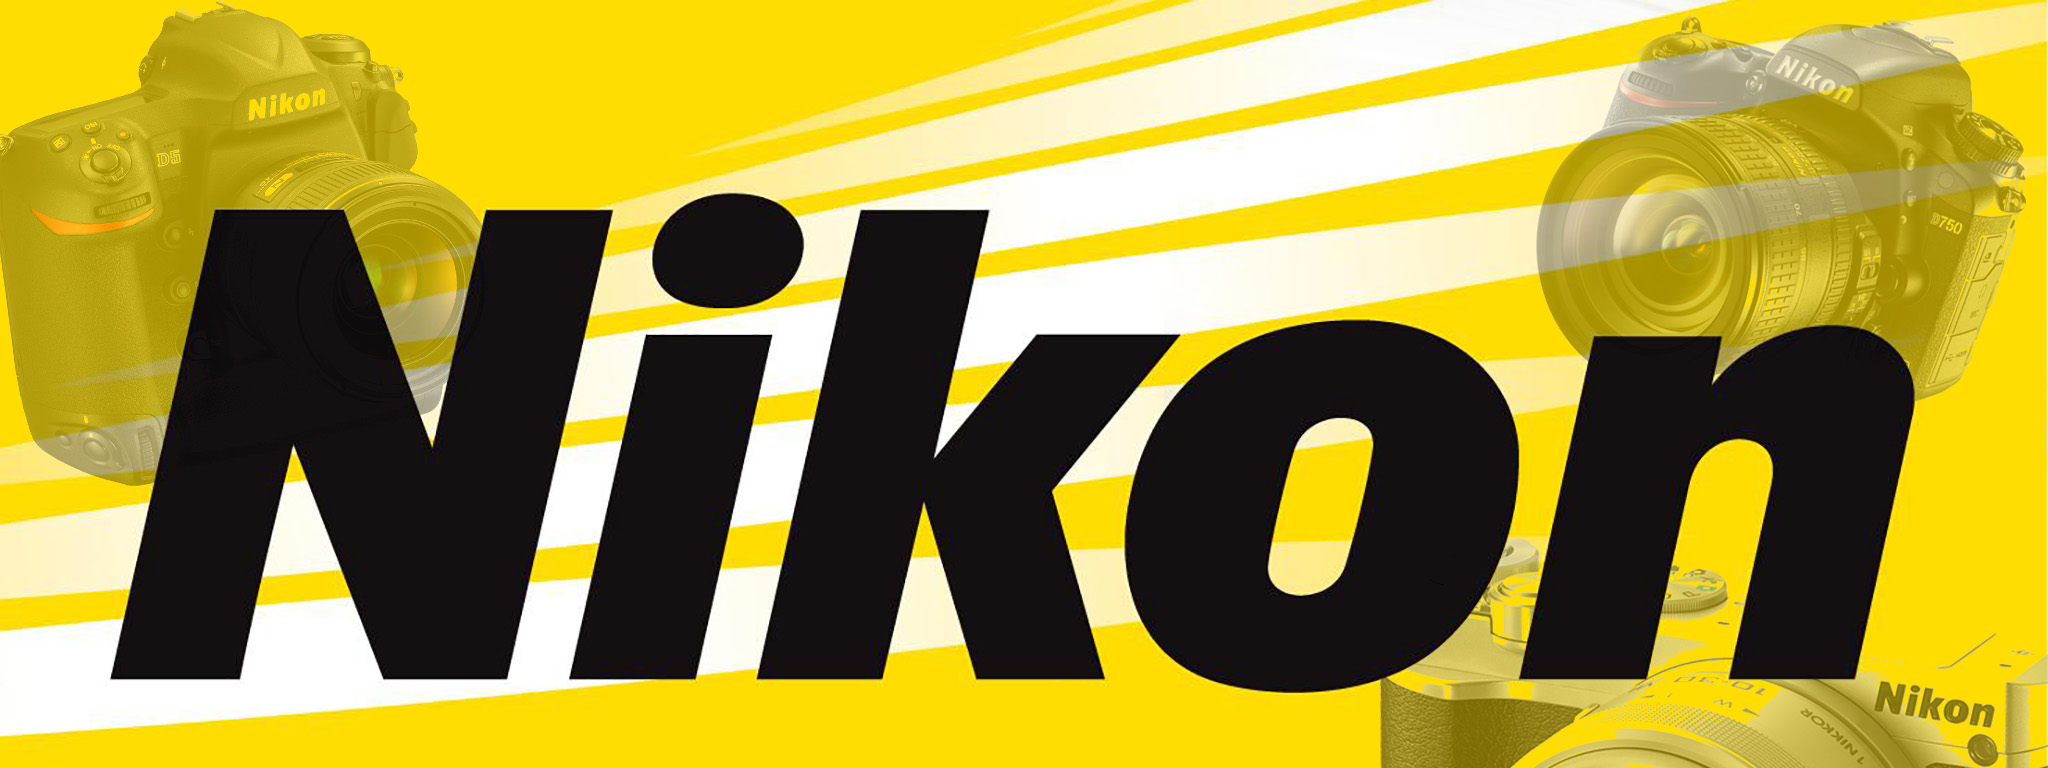 [Dự đoán] Những thiết bị của Nikon có thể ra mắt năm 2017:  D5x, D760 và Nikon Df mới